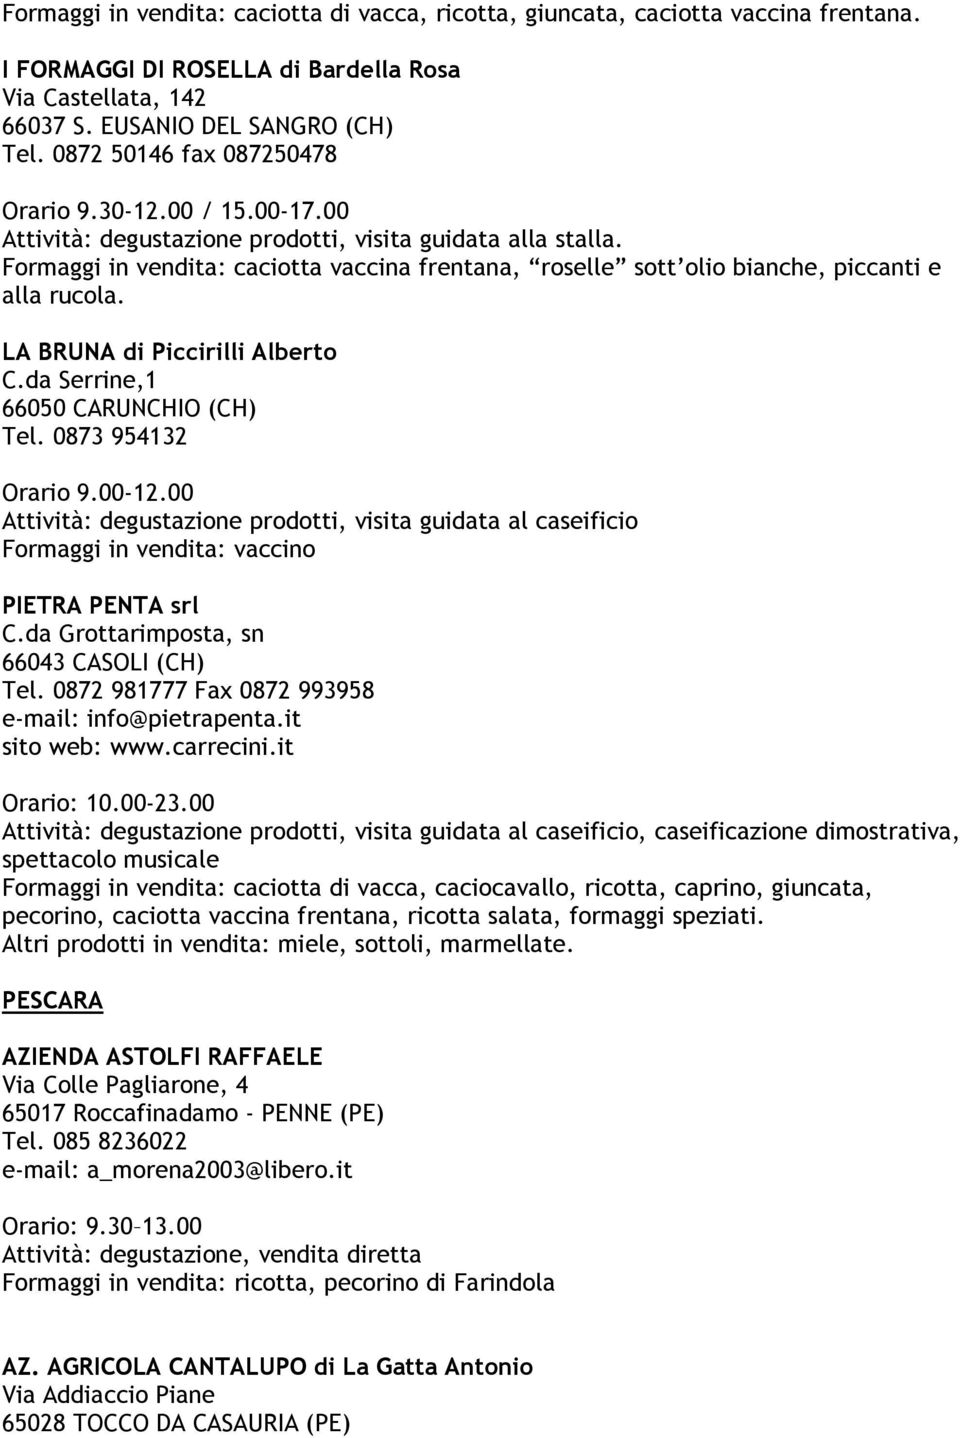 Formaggi in vendita: caciotta vaccina frentana, roselle sott olio bianche, piccanti e alla rucola. LA BRUNA di Piccirilli Alberto C.da Serrine,1 66050 CARUNCHIO (CH) Tel. 0873 954132 Orario 9.00-12.